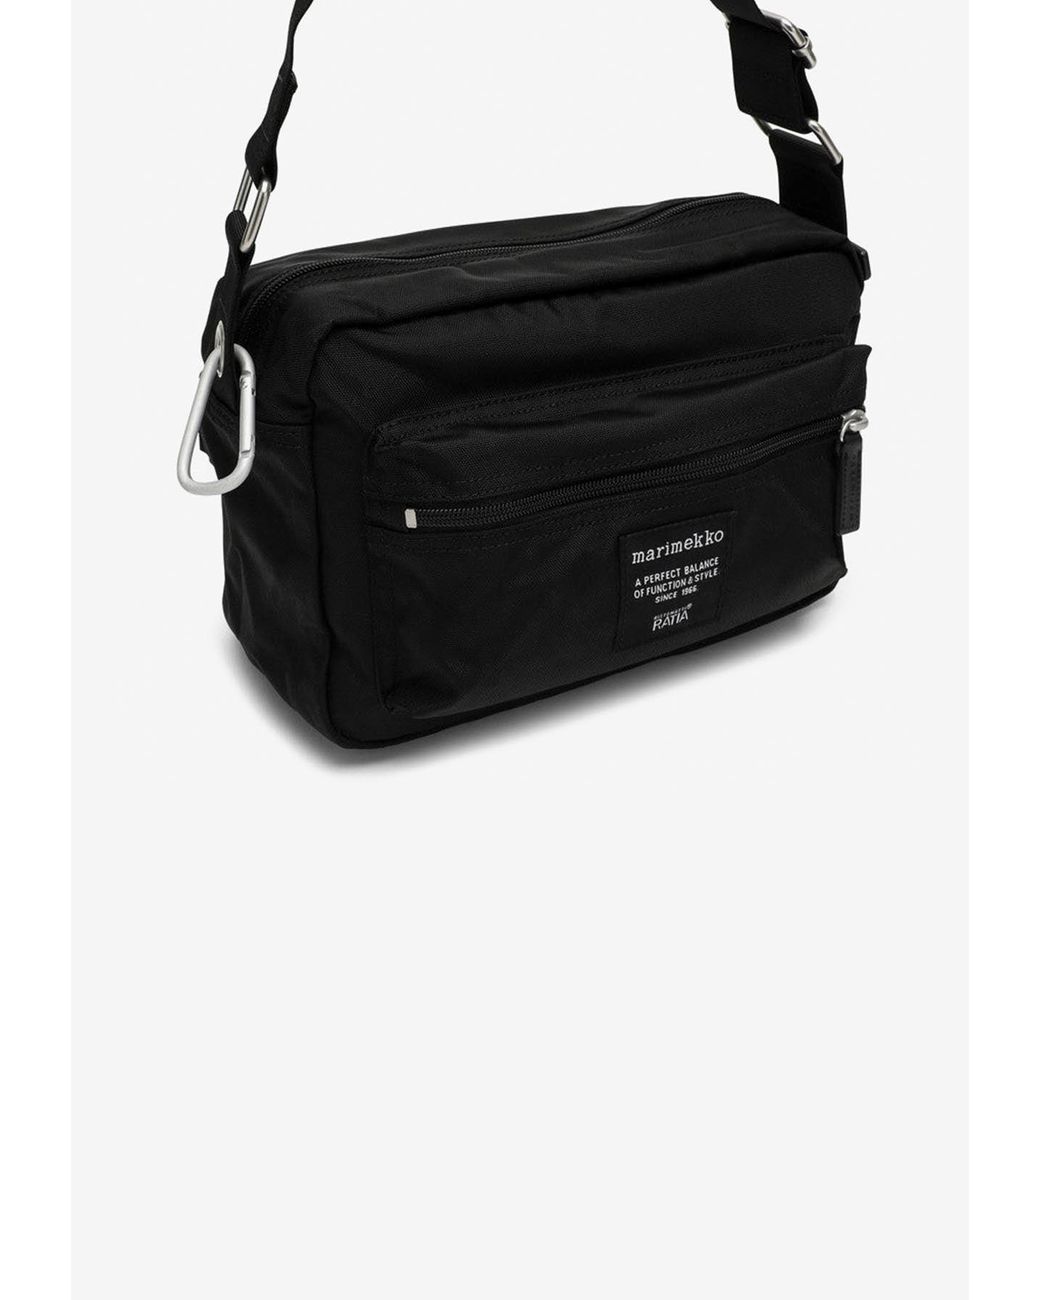 Marimekko My Things Shoulder Bag in Black | Lyst